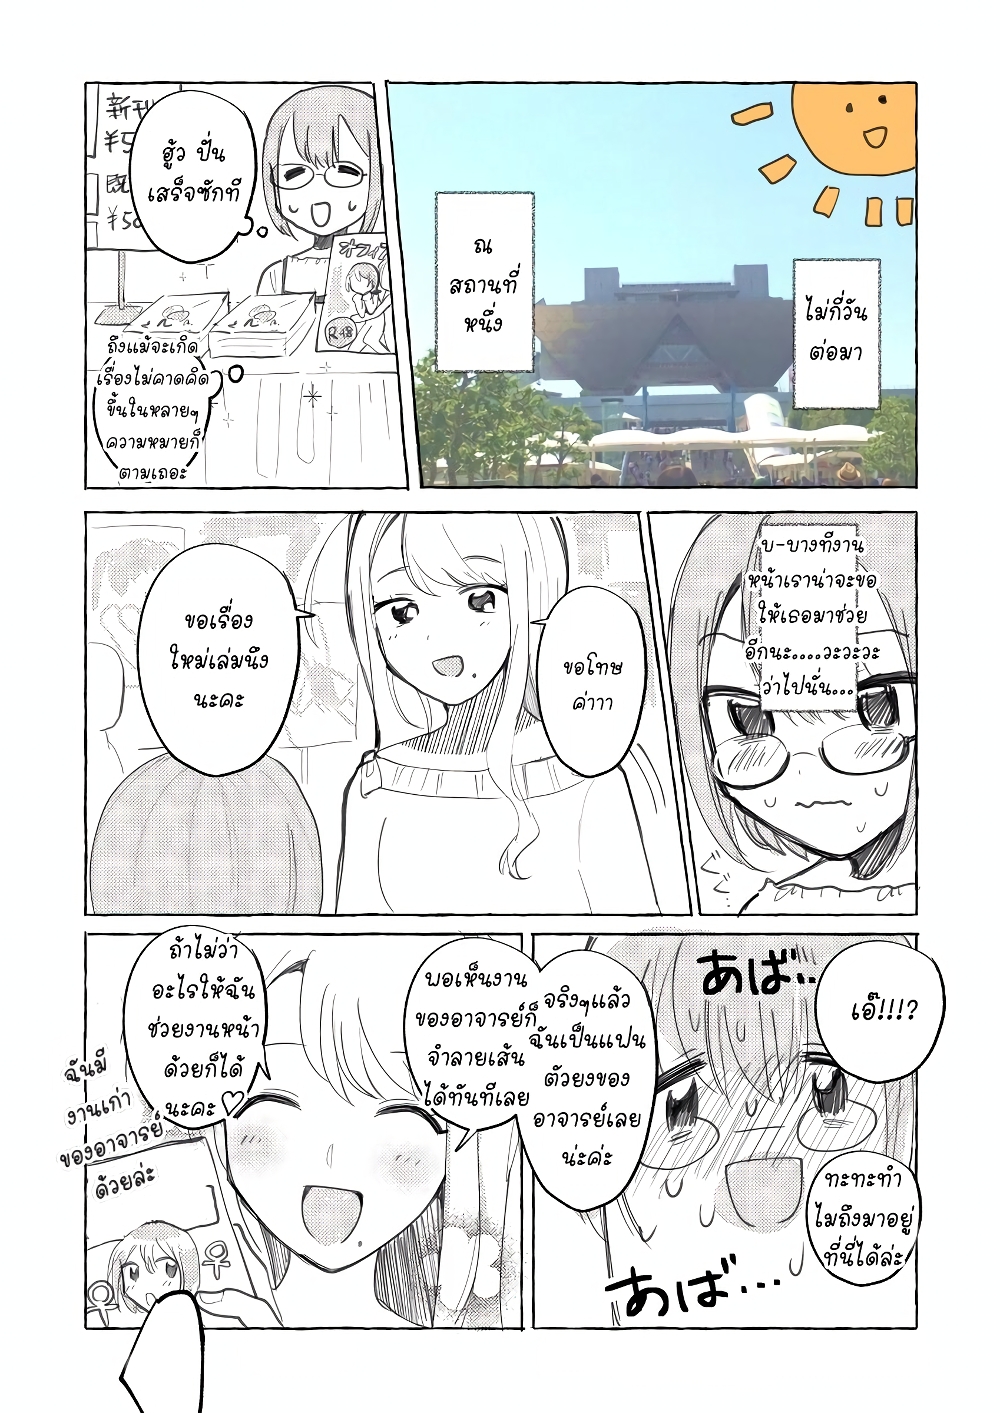 A Doujin Artist Calls an Escort Girl 1 (5)